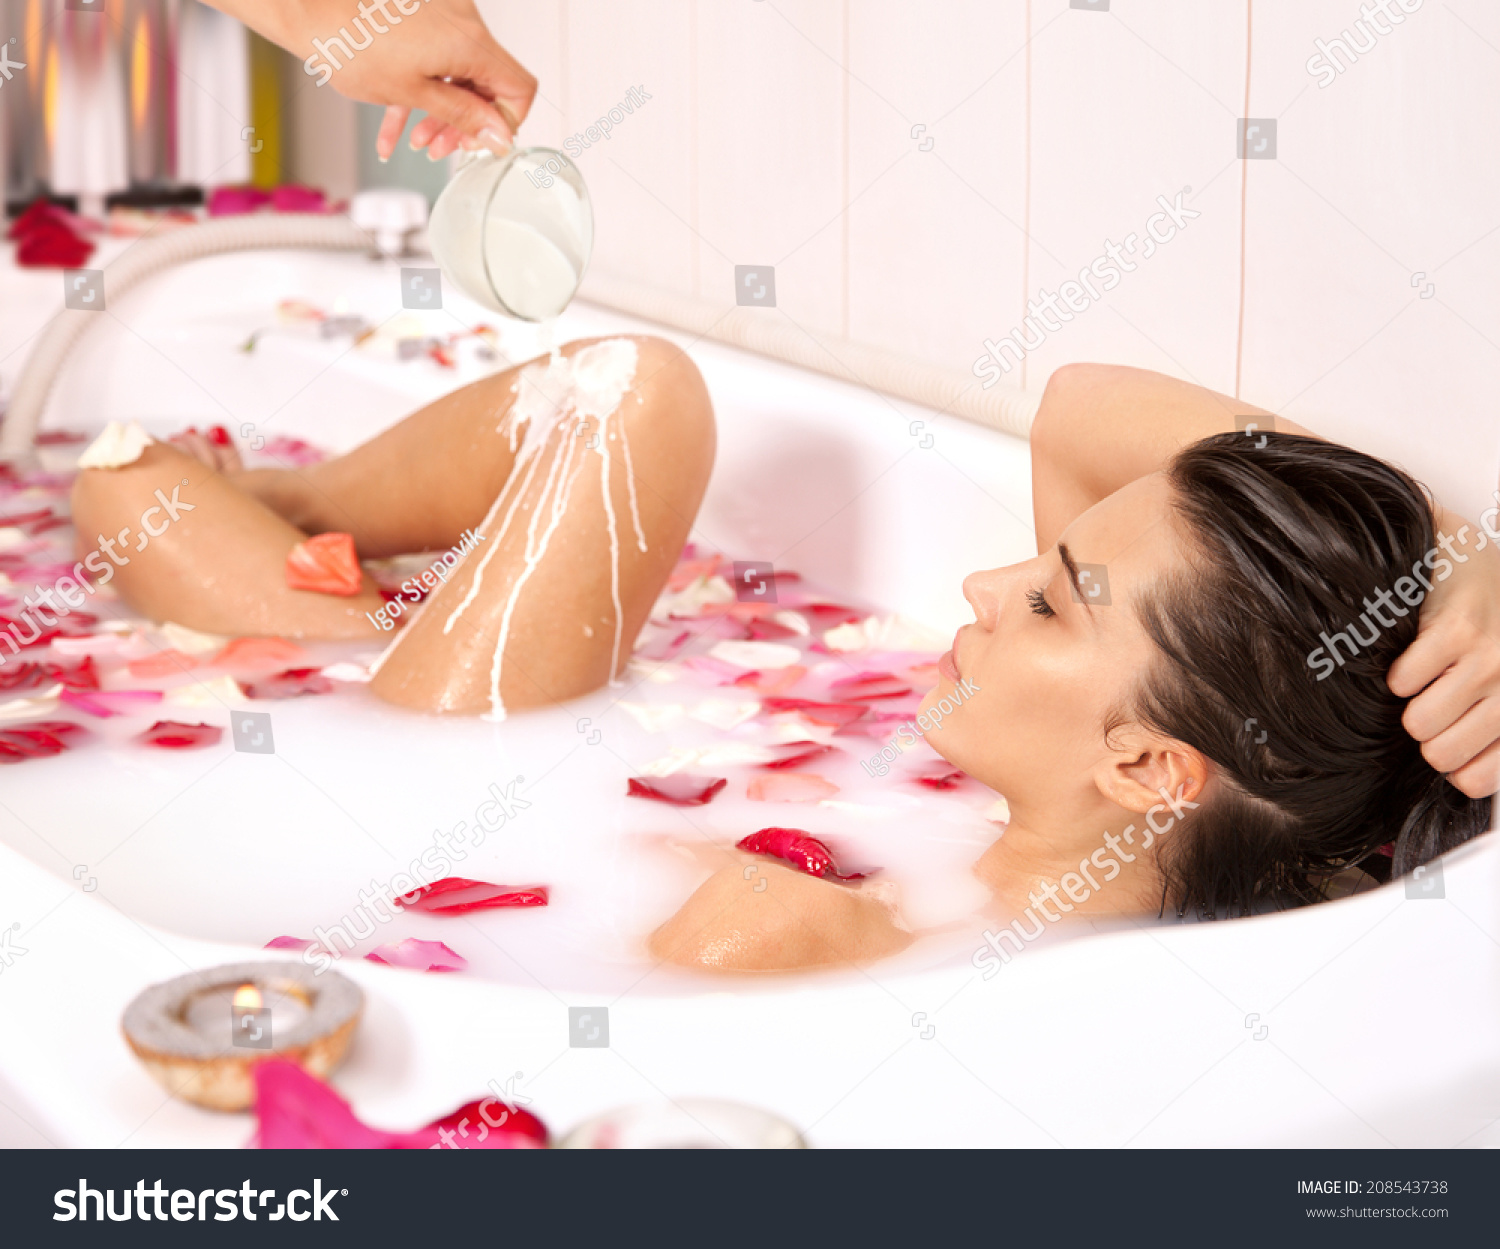 Naked Girl In Tub